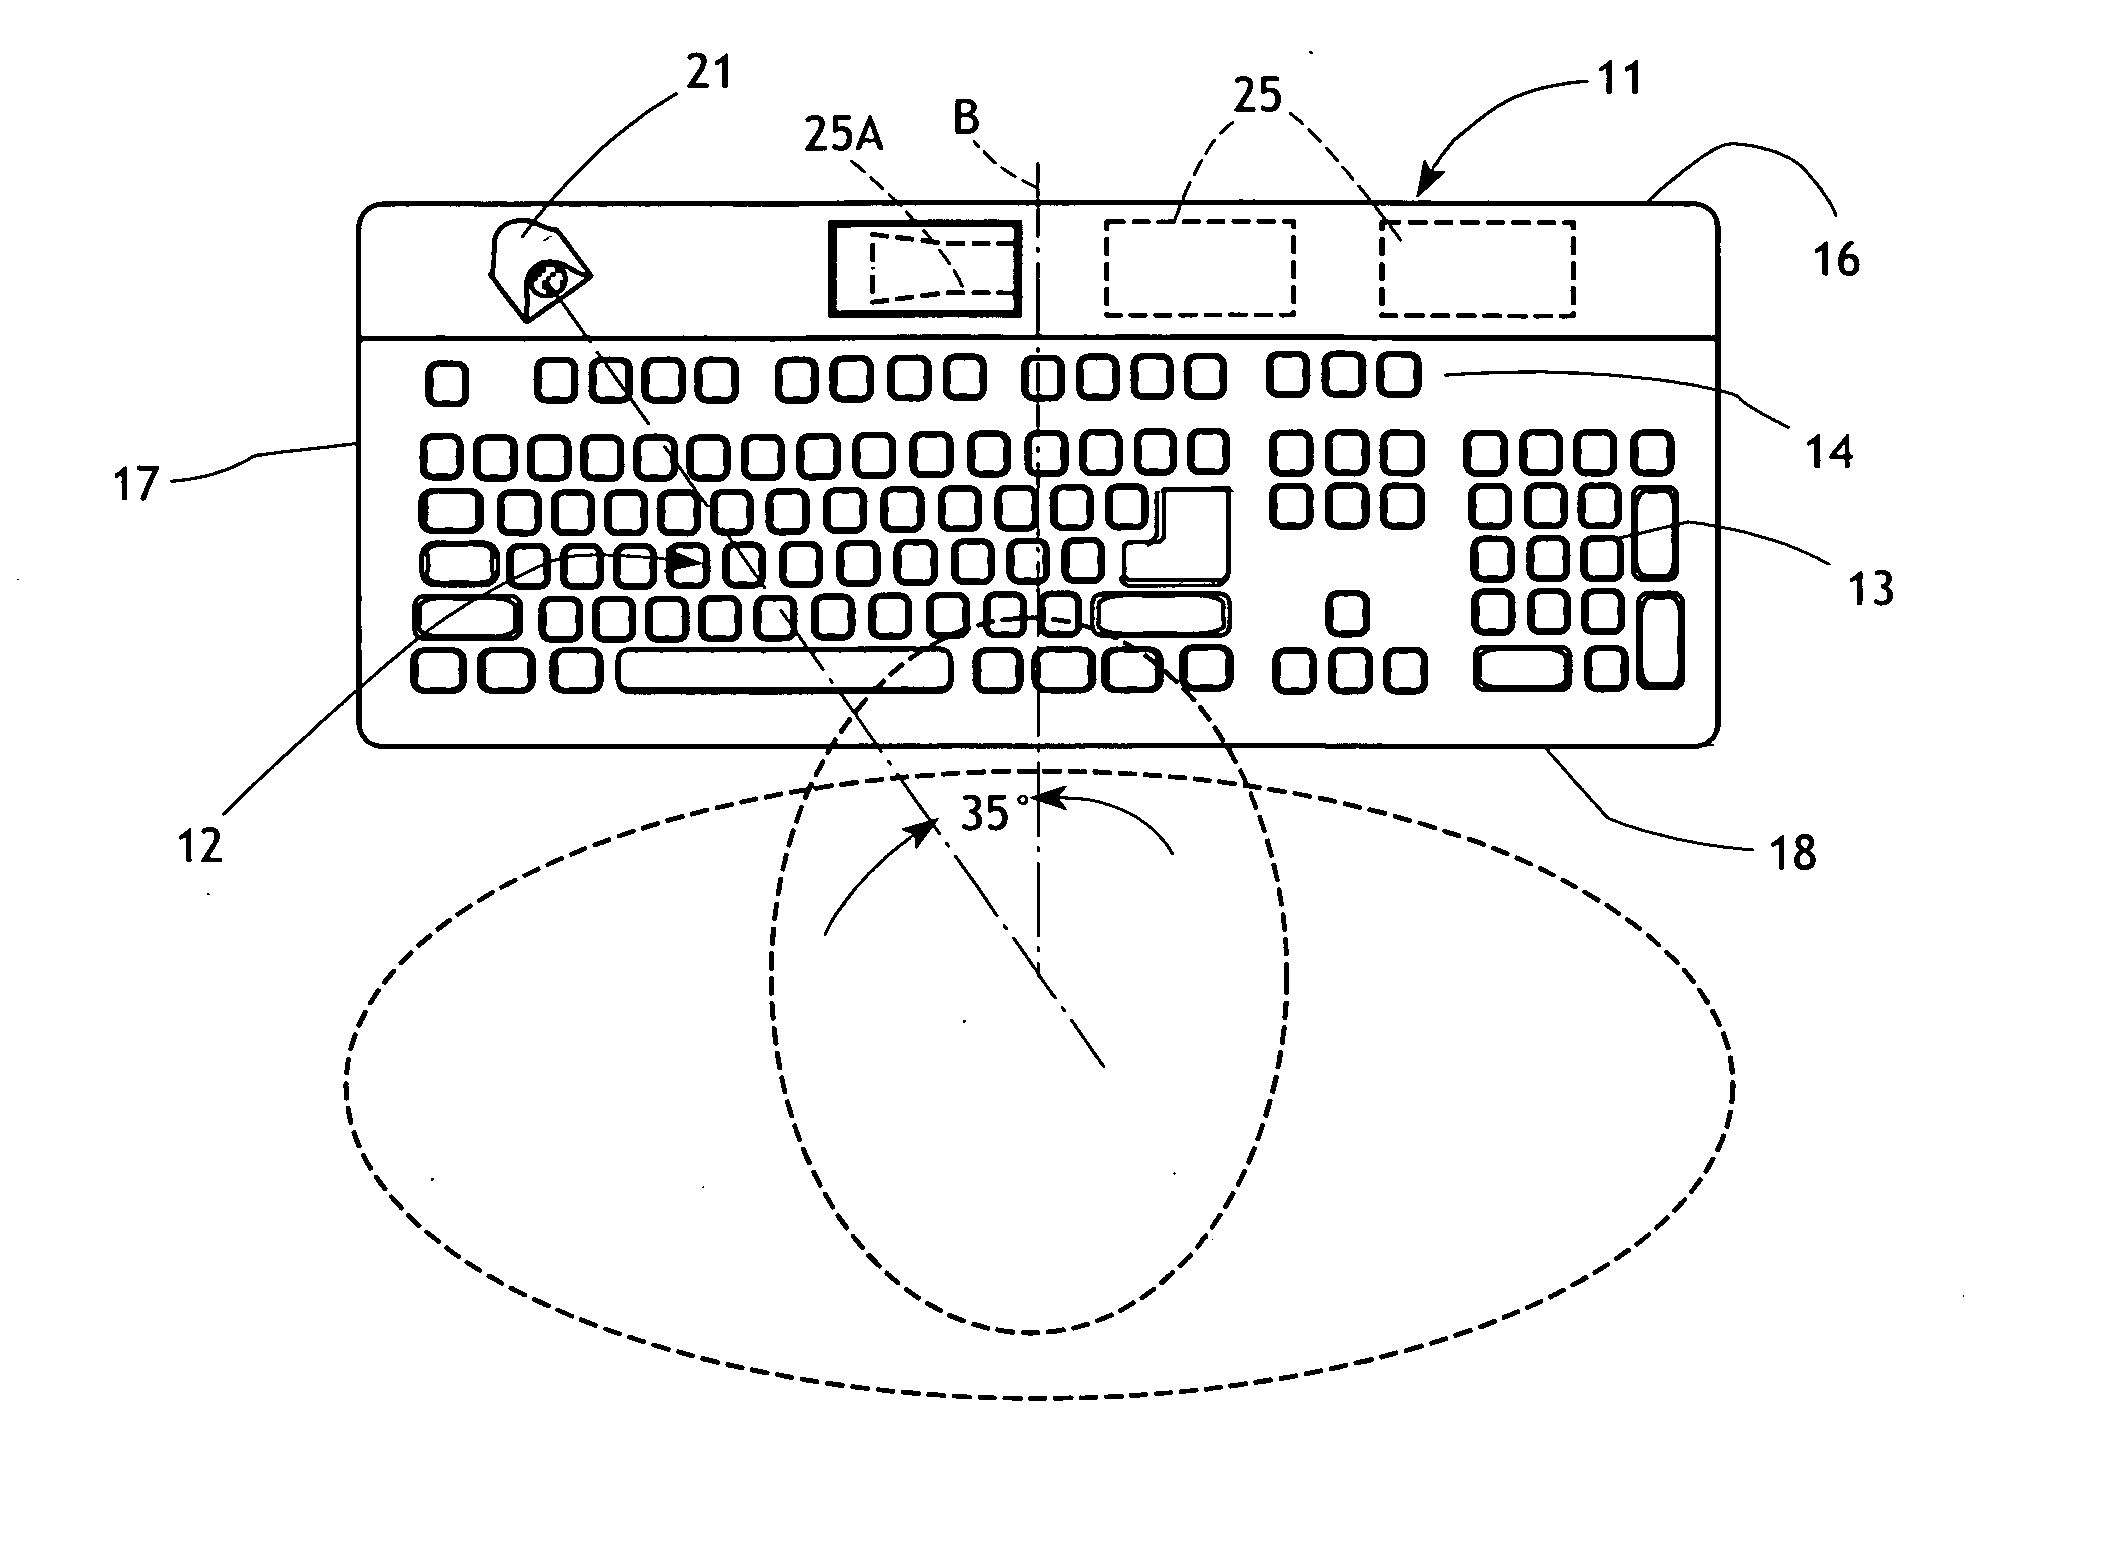 Computer keyboard with ultrasonic user proximity sensor